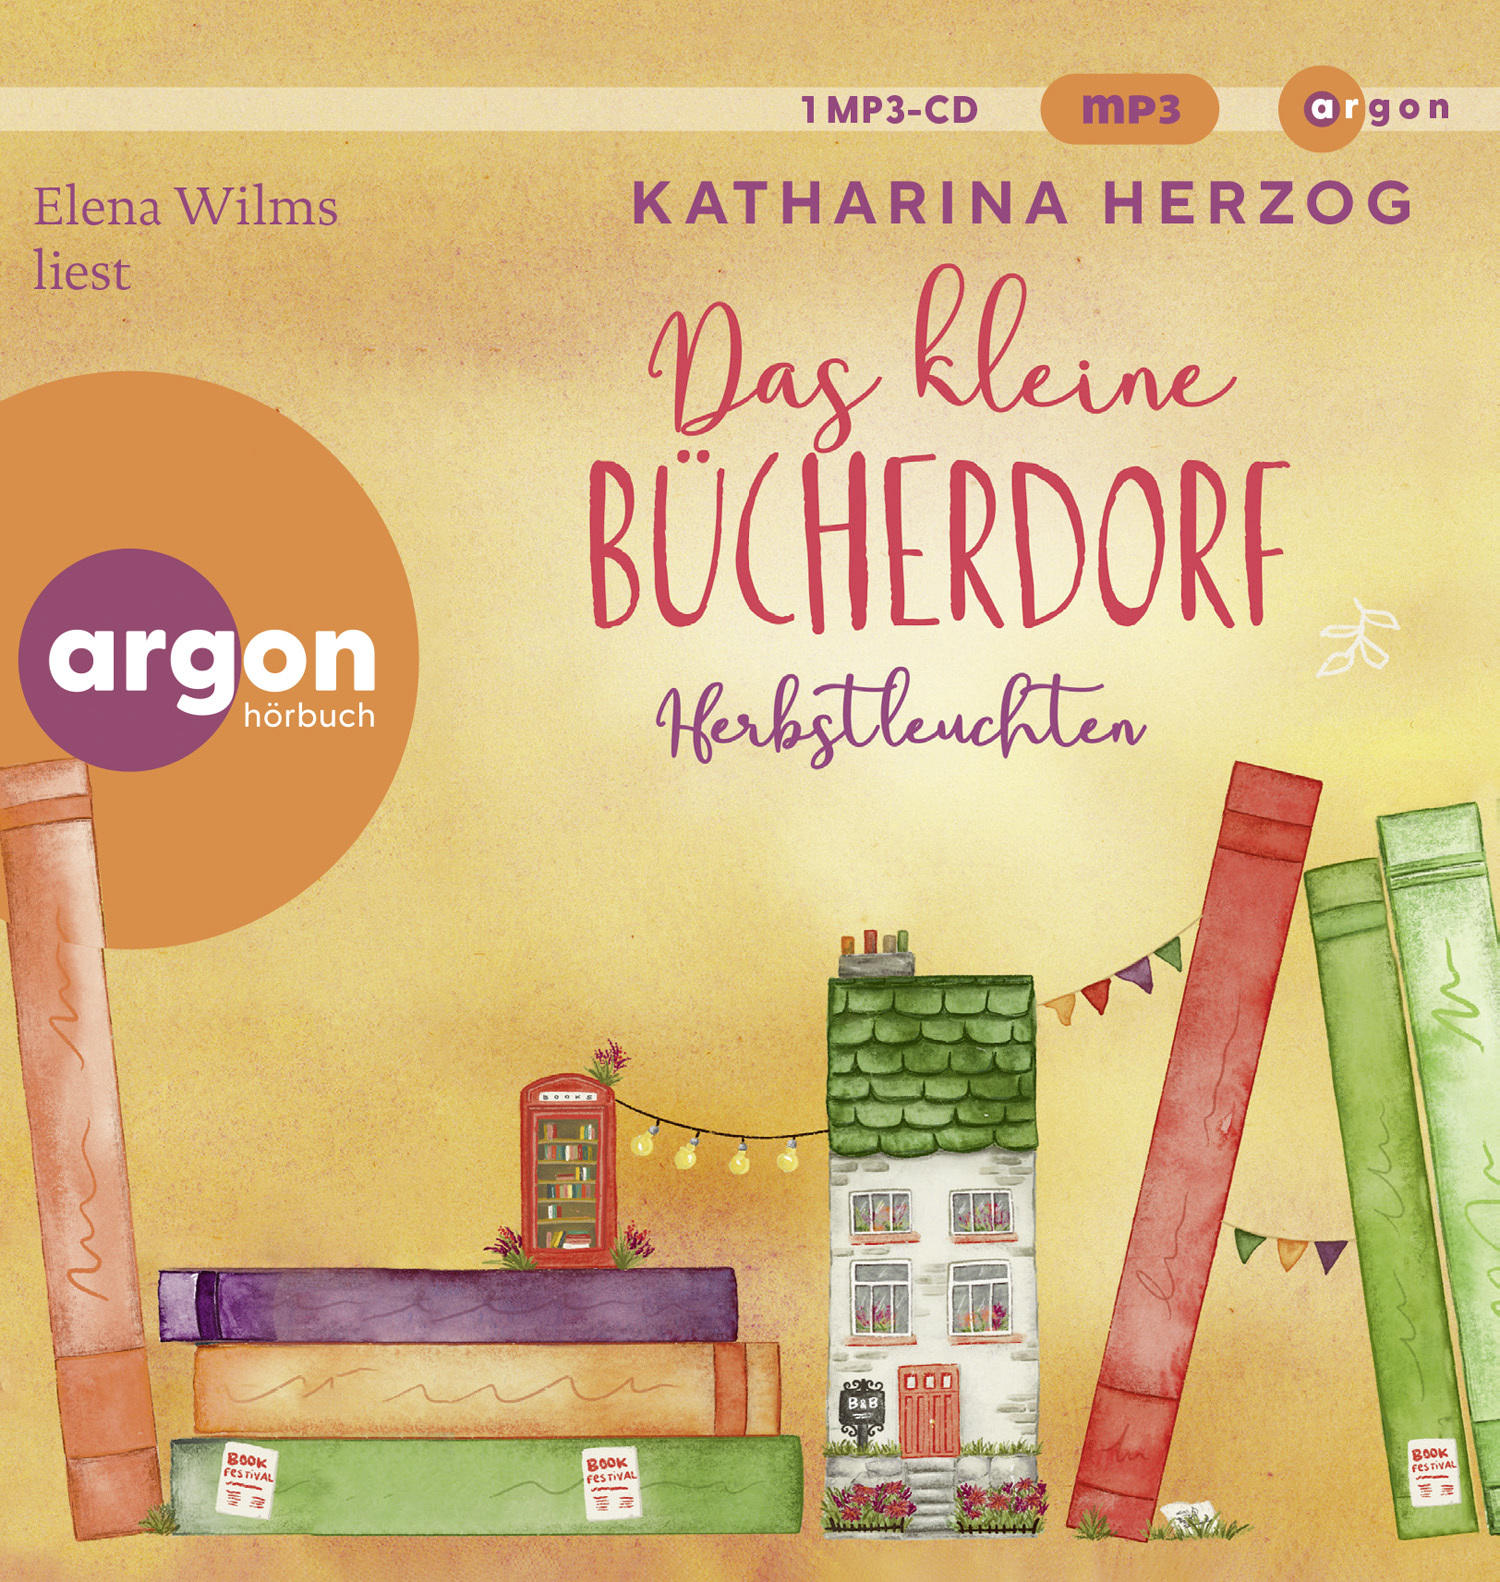 kleine Wilms (MP3-CD) - Elena Herbstleuchten - Bücherdorf: Das